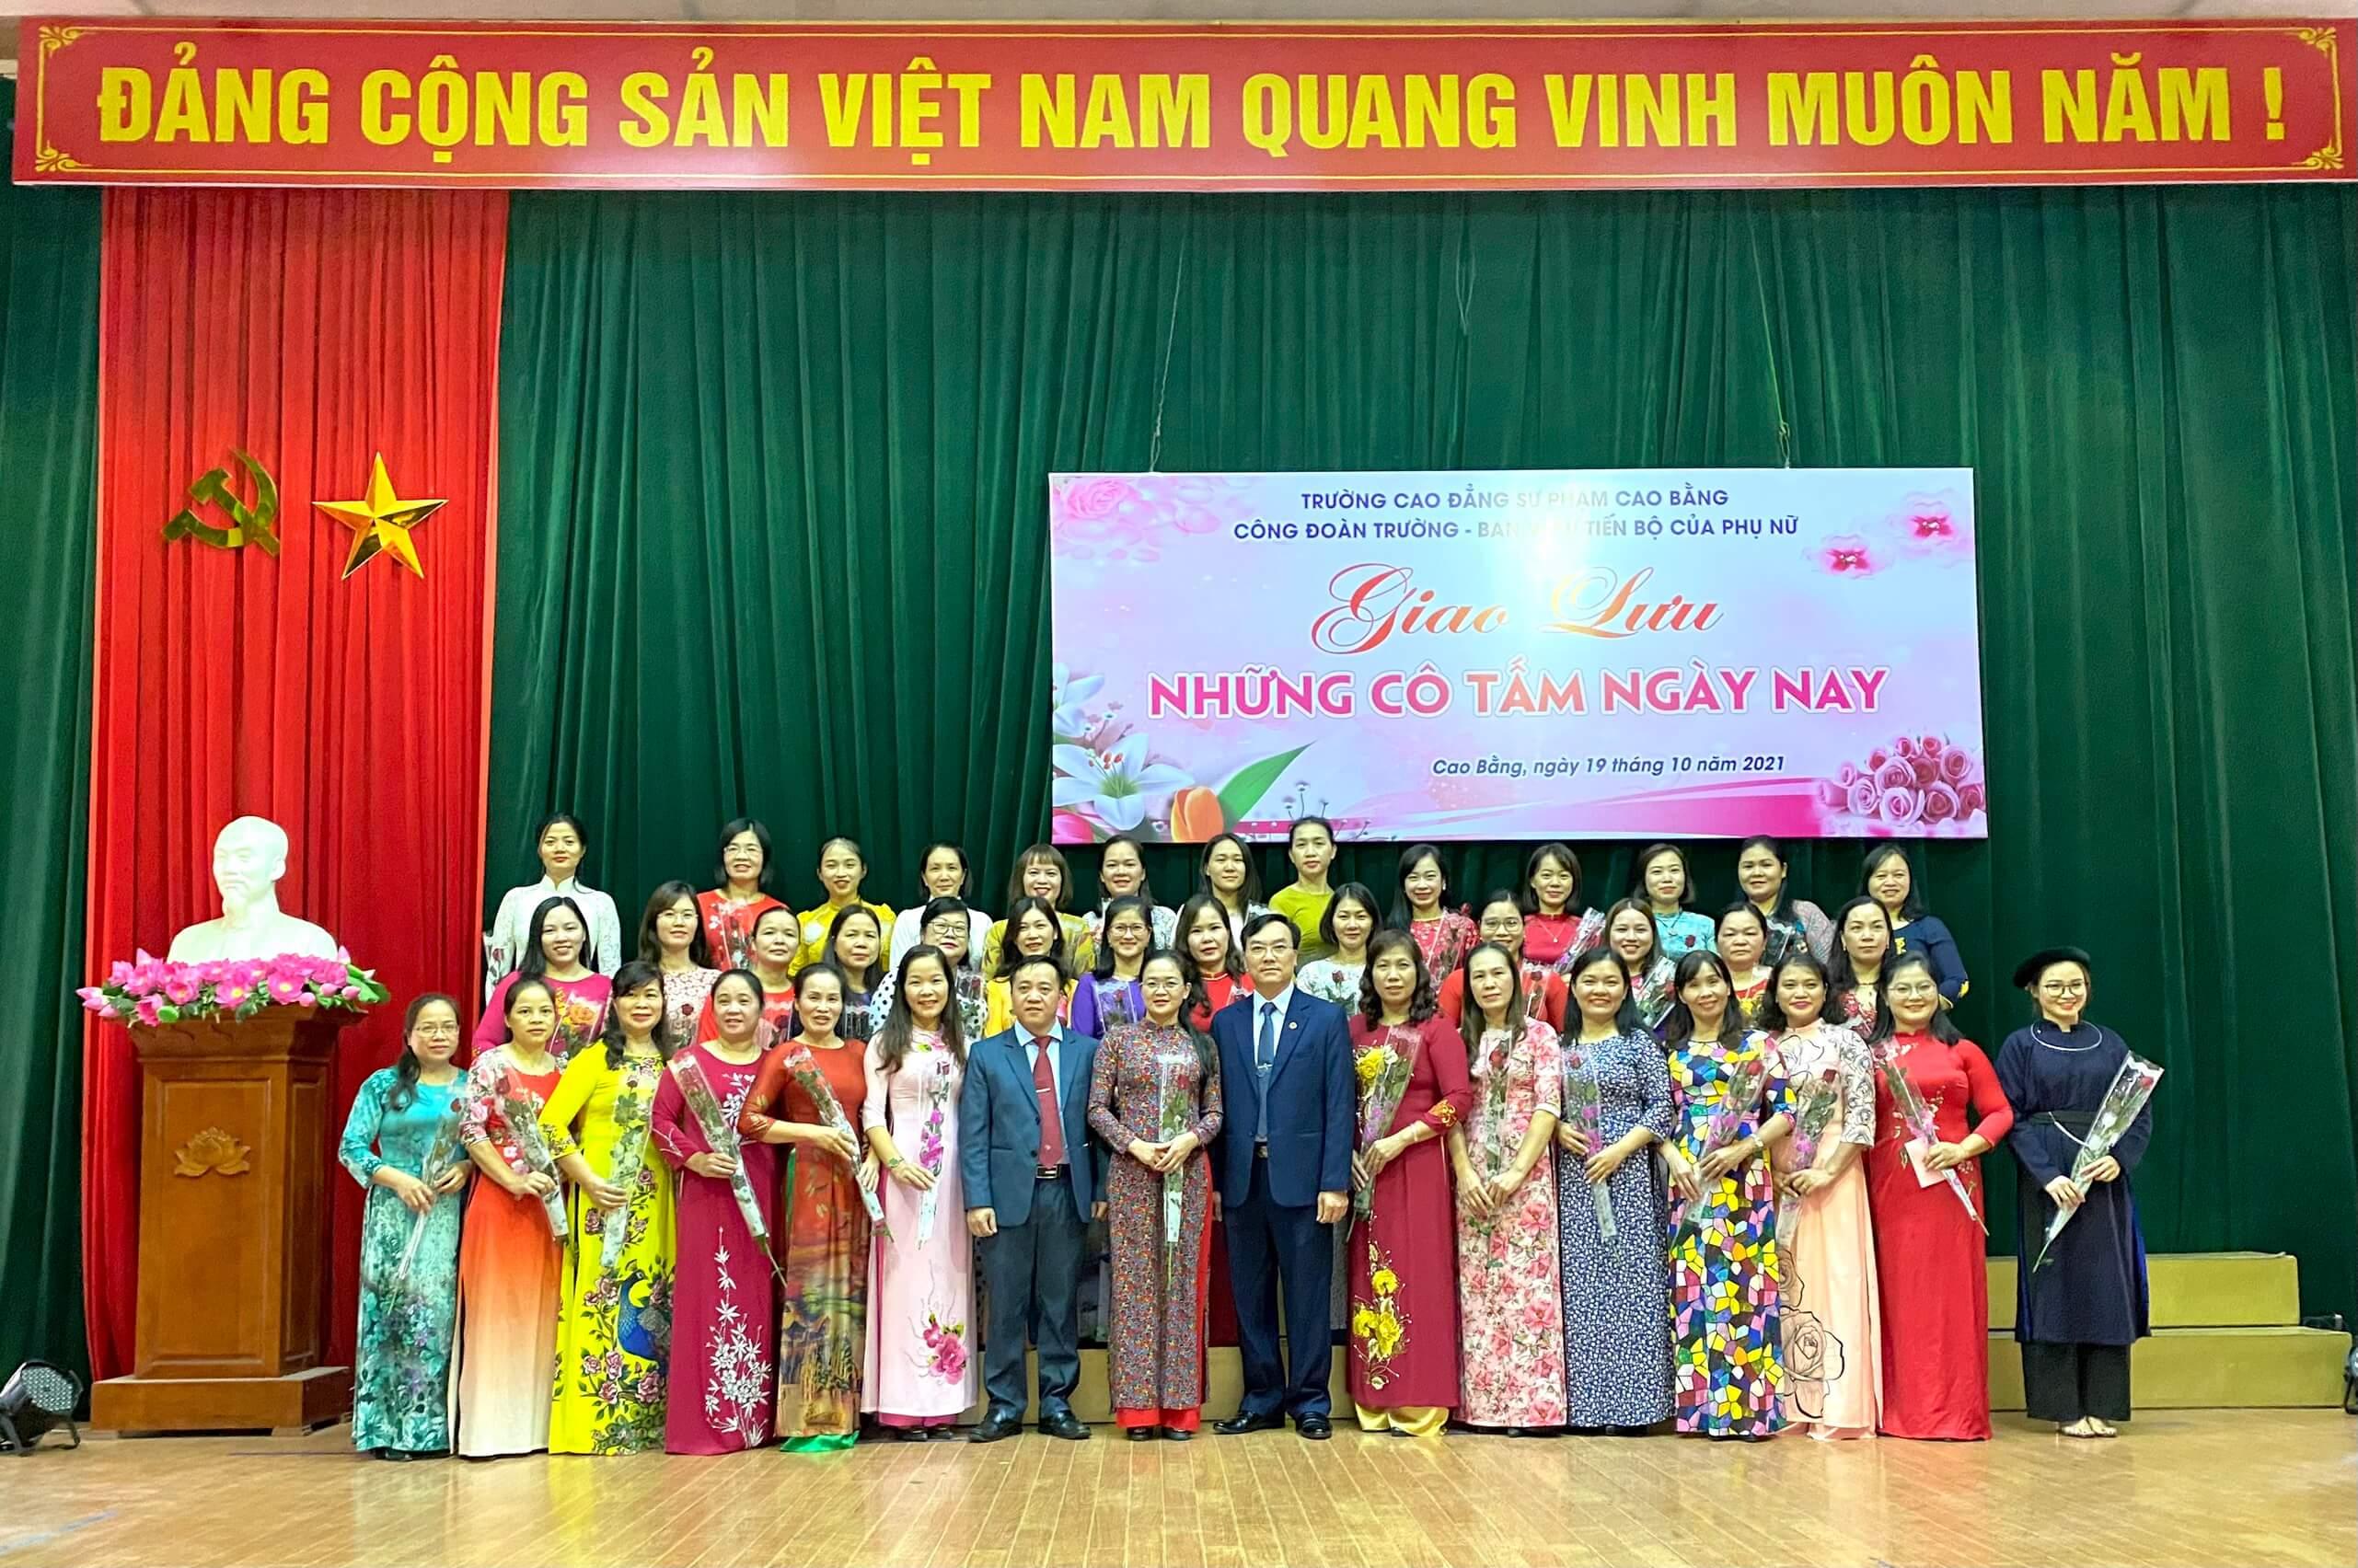 Trường Cao đẳng Sư phạm Cao Bằng tổ chức thành công  hoạt động kỷ niệm 91 năm ngày thành lập Hội Liên hiệp Phụ nữ Việt Nam  (20/10/1930-20/10/2021)